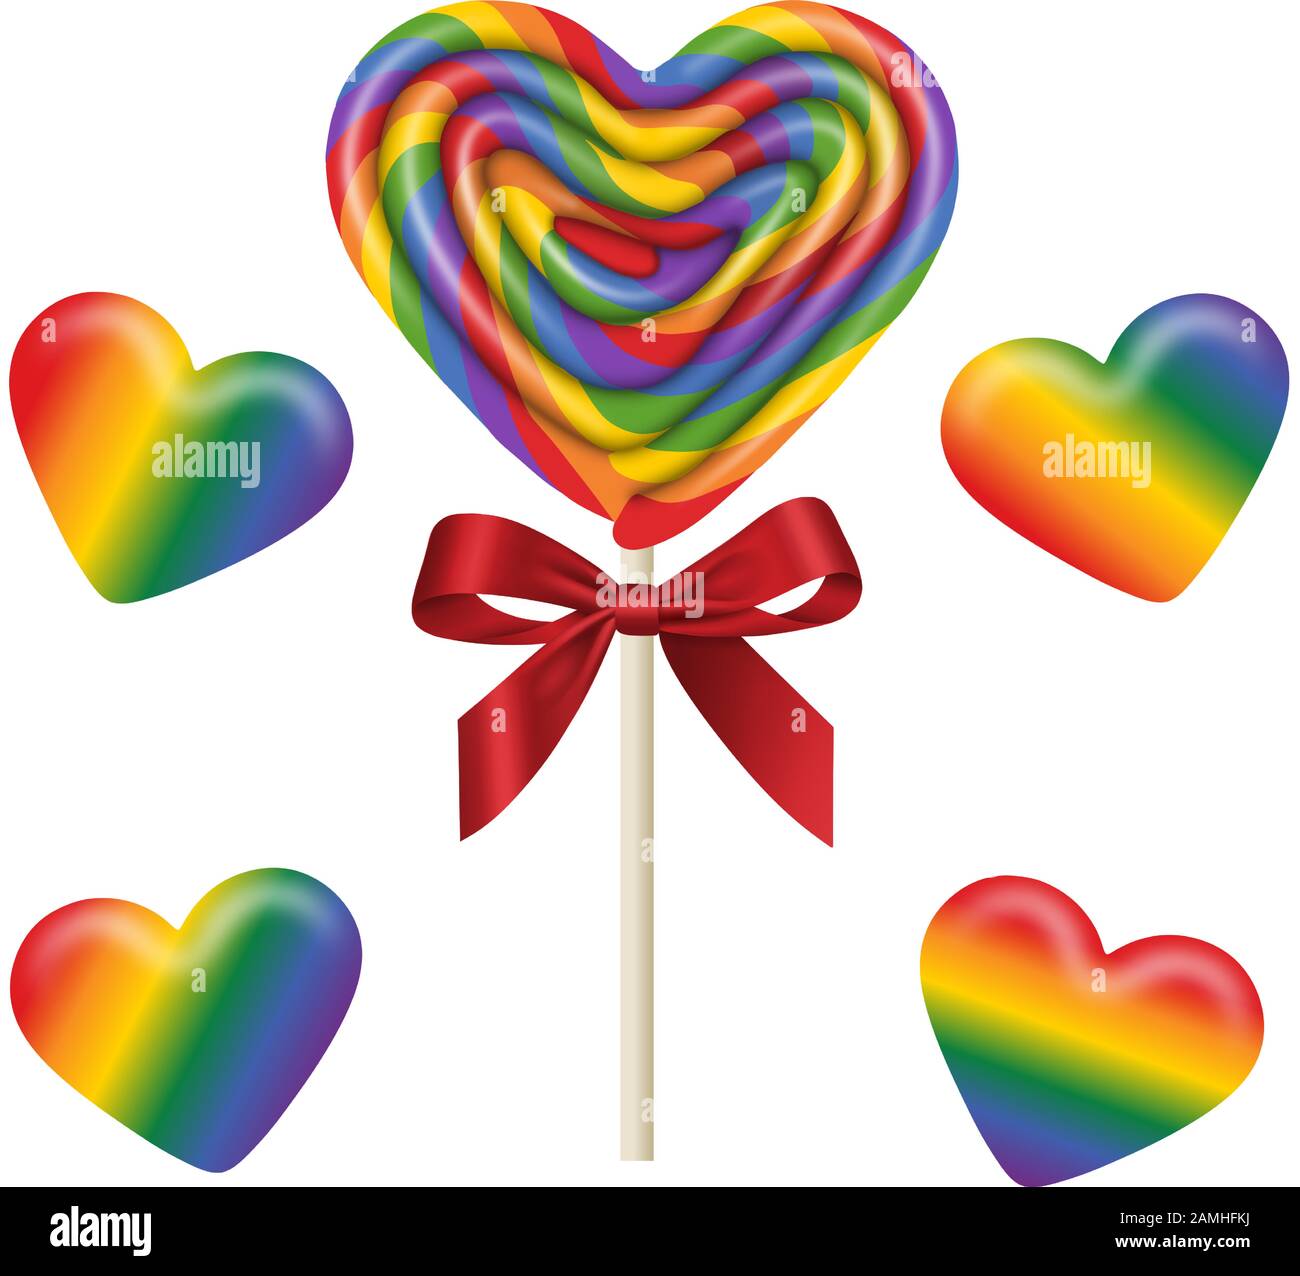 mettez des sucettes et des bonbons gummy isolés en forme de coeur aux couleurs de l'arc-en-ciel Illustration de Vecteur